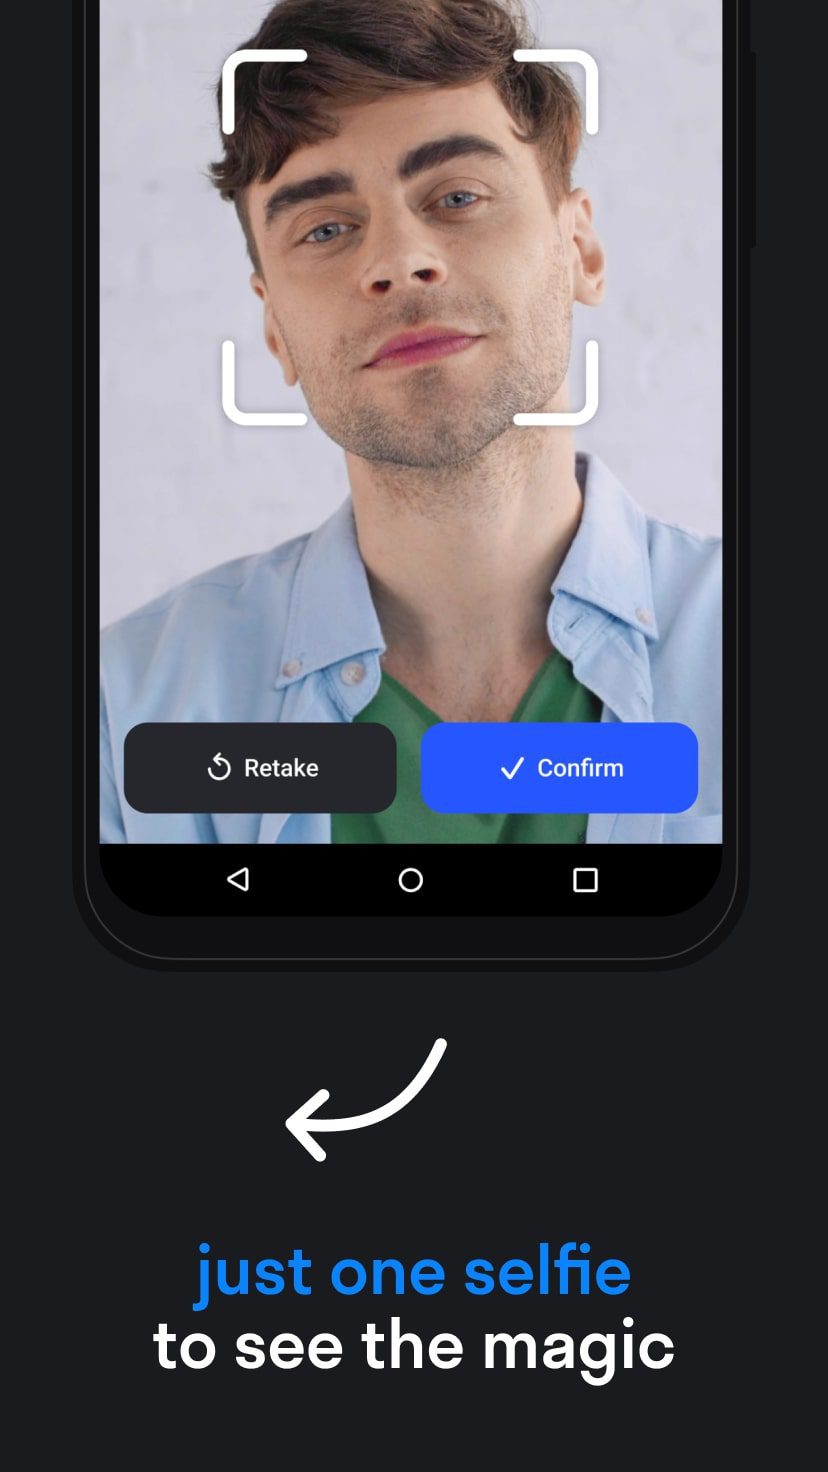 приложение для замены лиц на фото андроид